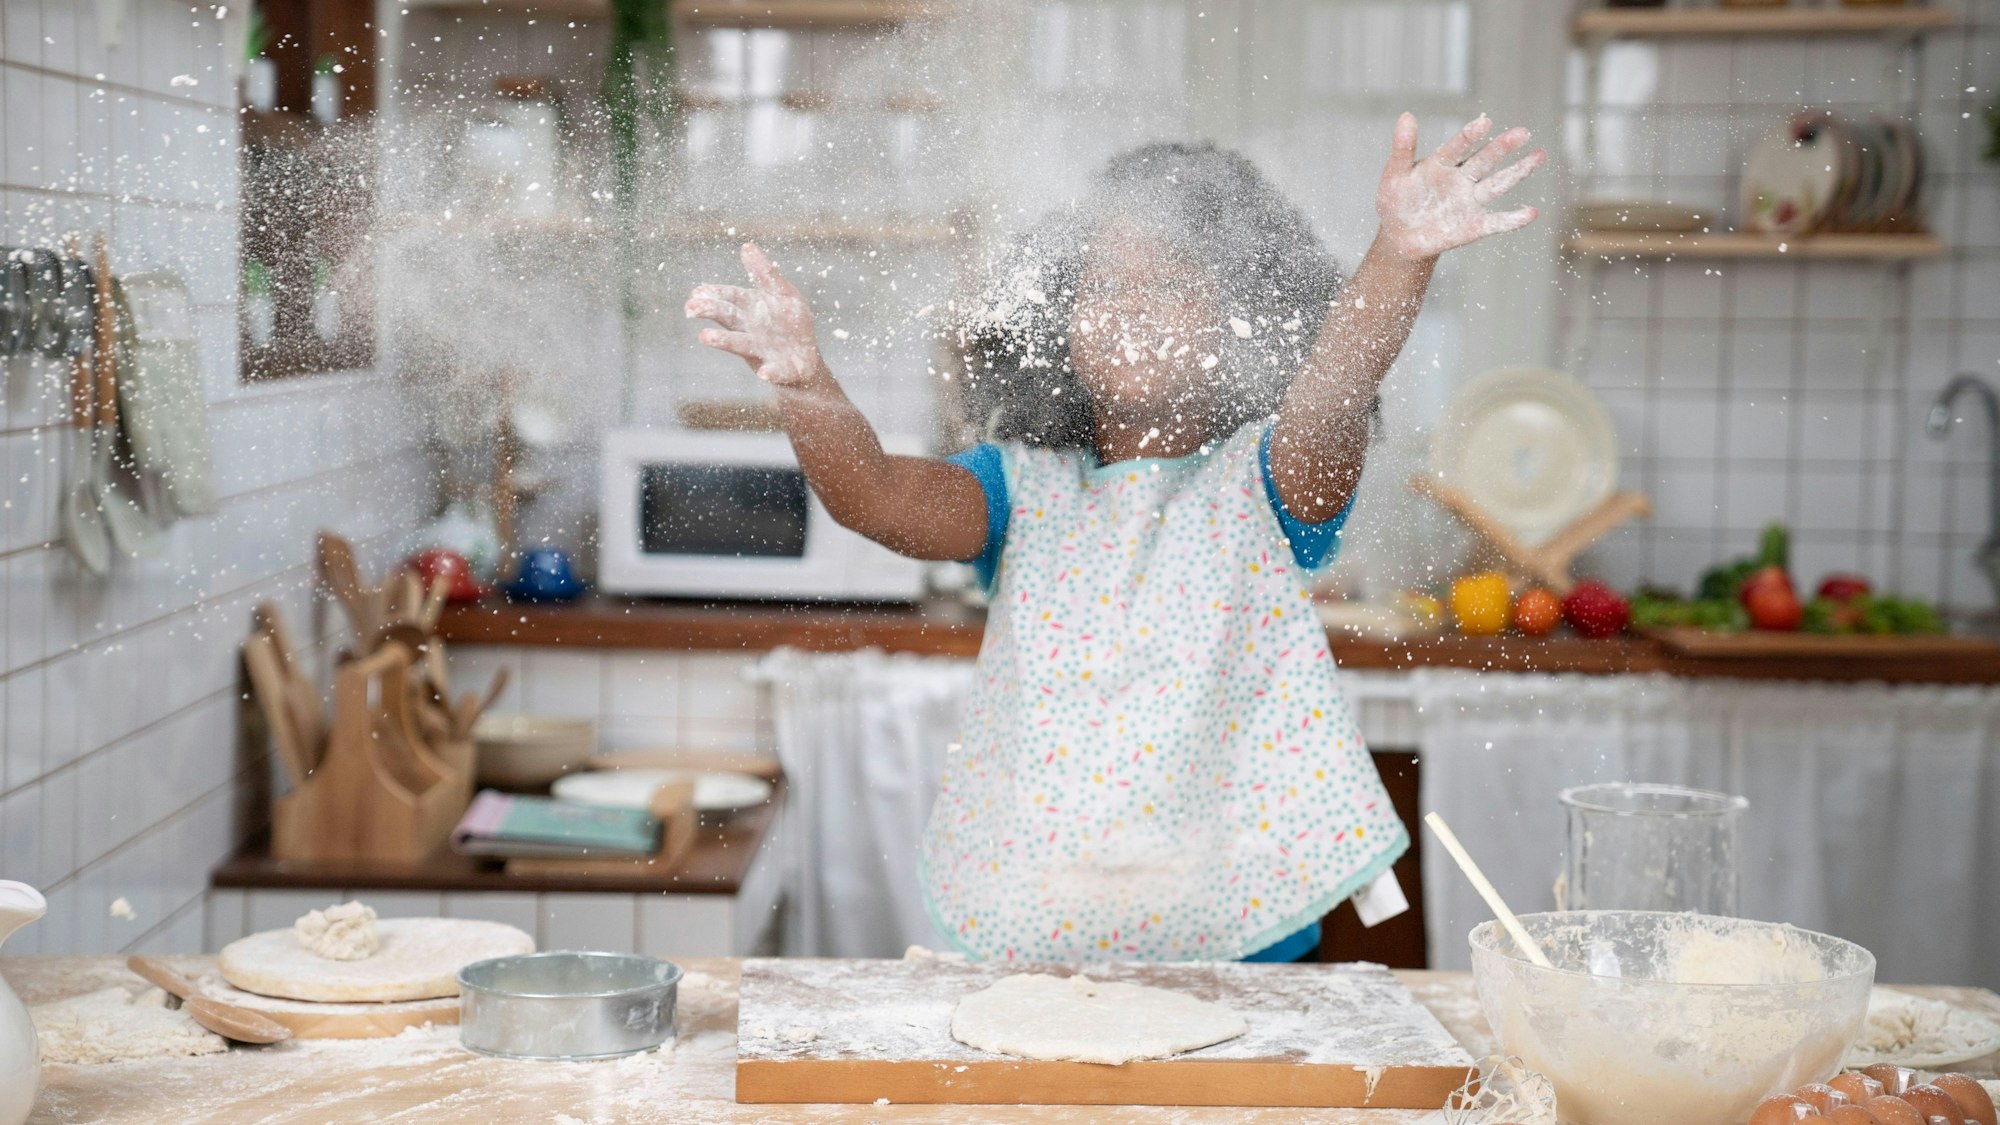 Ein kleines Mädchen wirft beim Backen Mehl in die Luft.